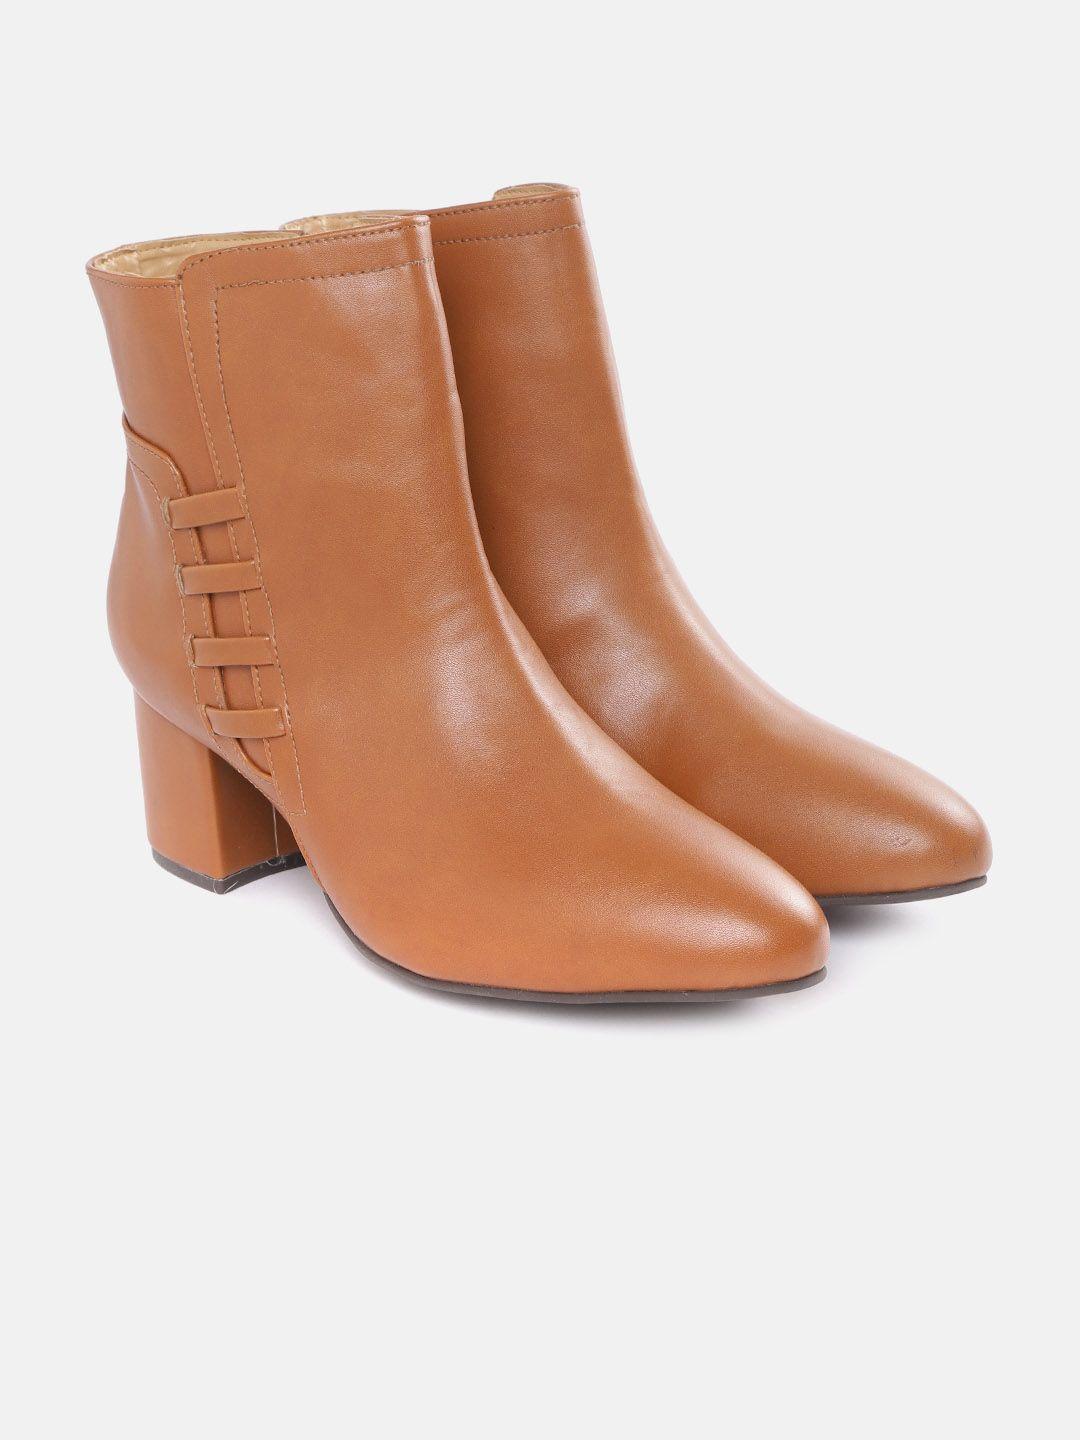 mast & harbour women tan brown solid regular boots